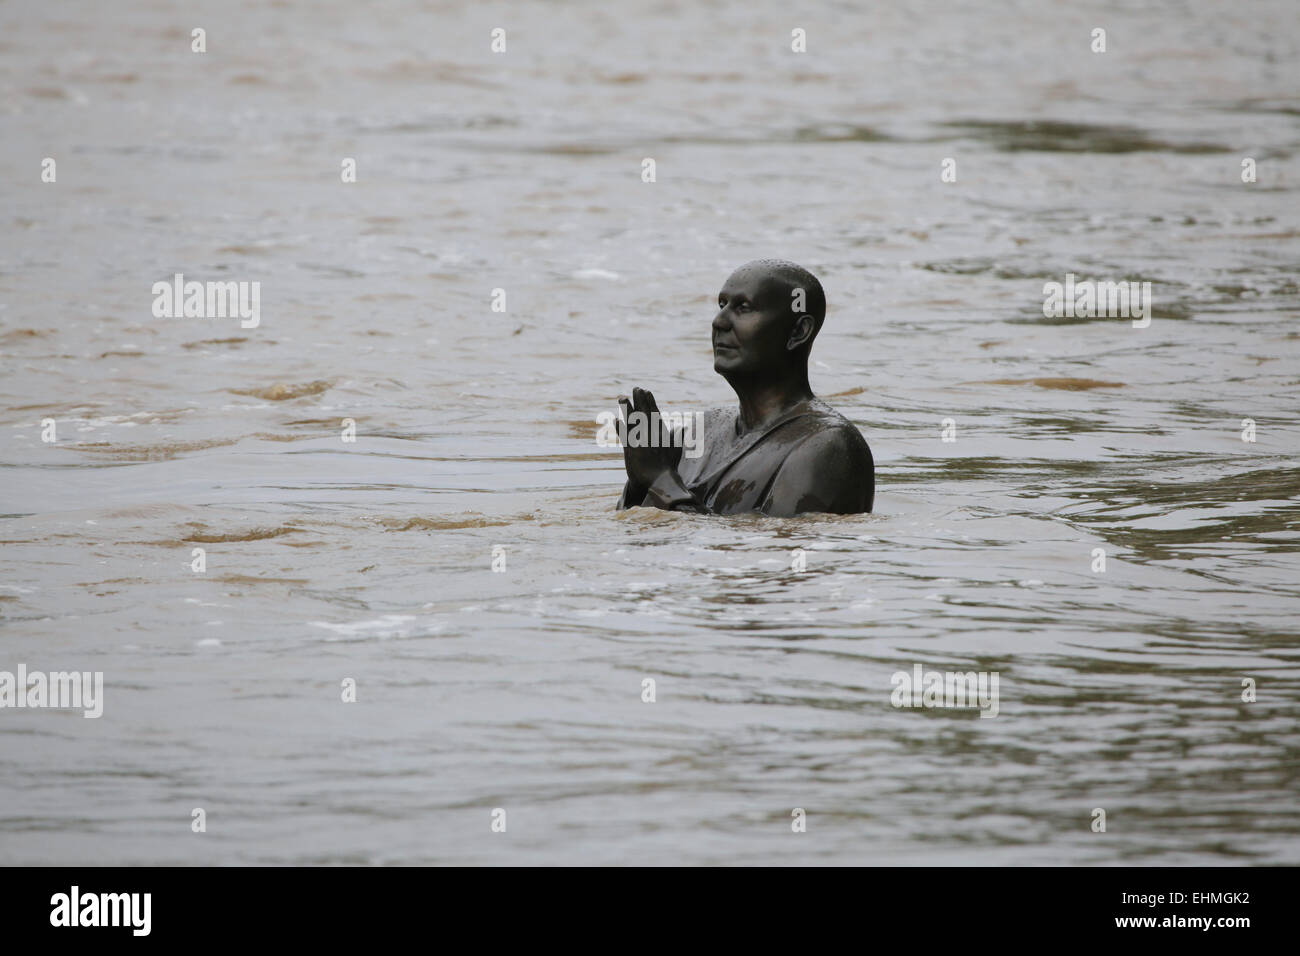 Estatua del dirigente espiritual de la India Sri Chinmoy, inundado por la crecida del río Vltava, en la isla de Kampa, en Praga, República Checa. Foto de stock